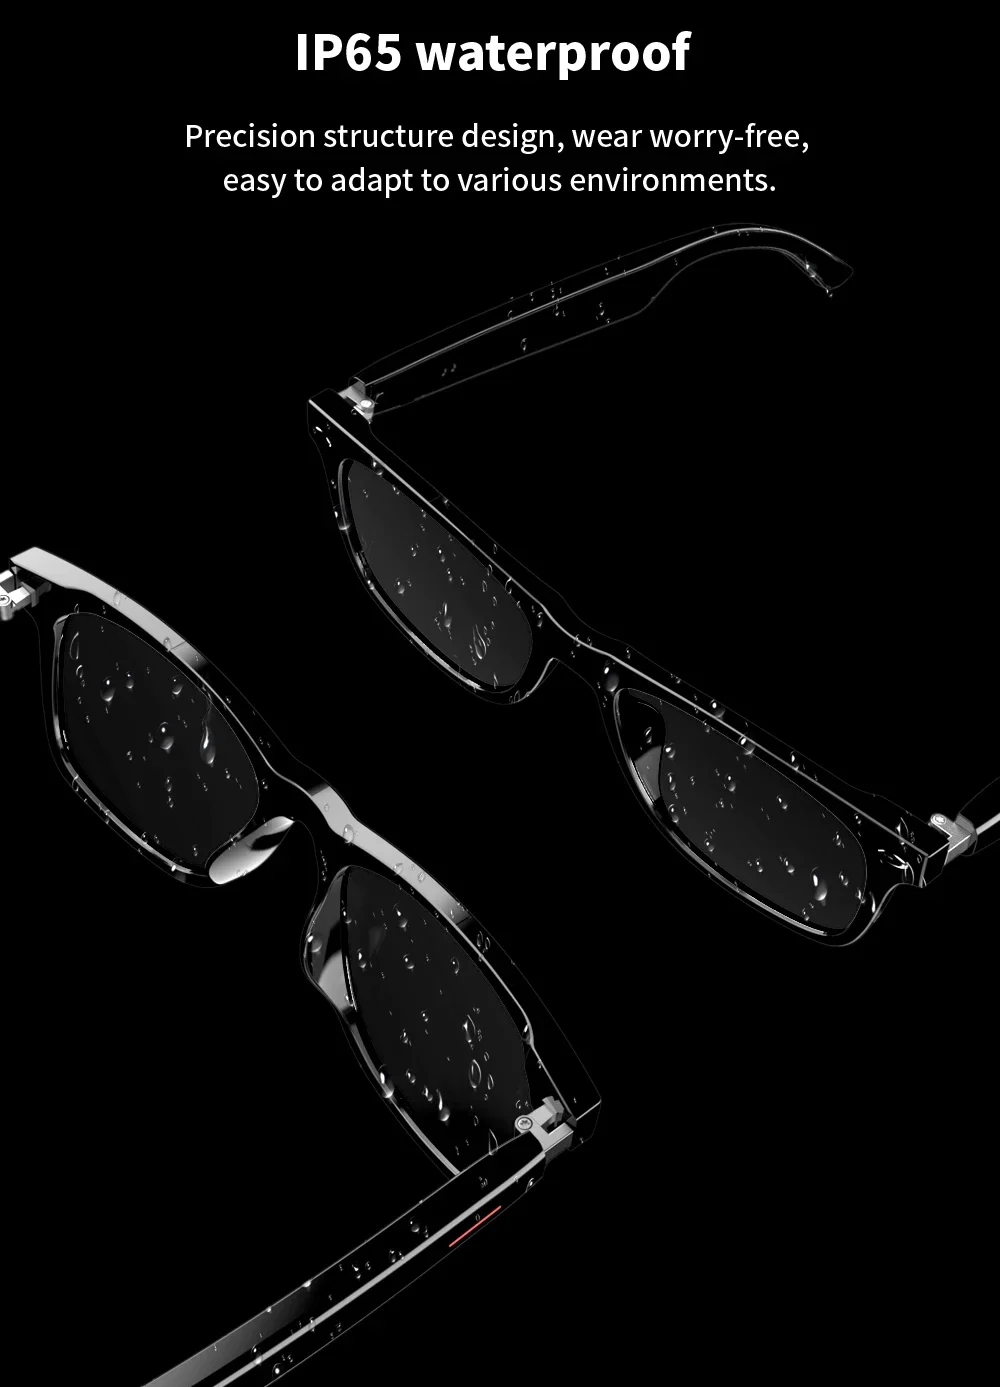 משקפיים חכמים - משקפי שמש או משקפי חסימת אור כחול עם בלוטות' לשיחות ומוזיקה ללא שימוש בידיים